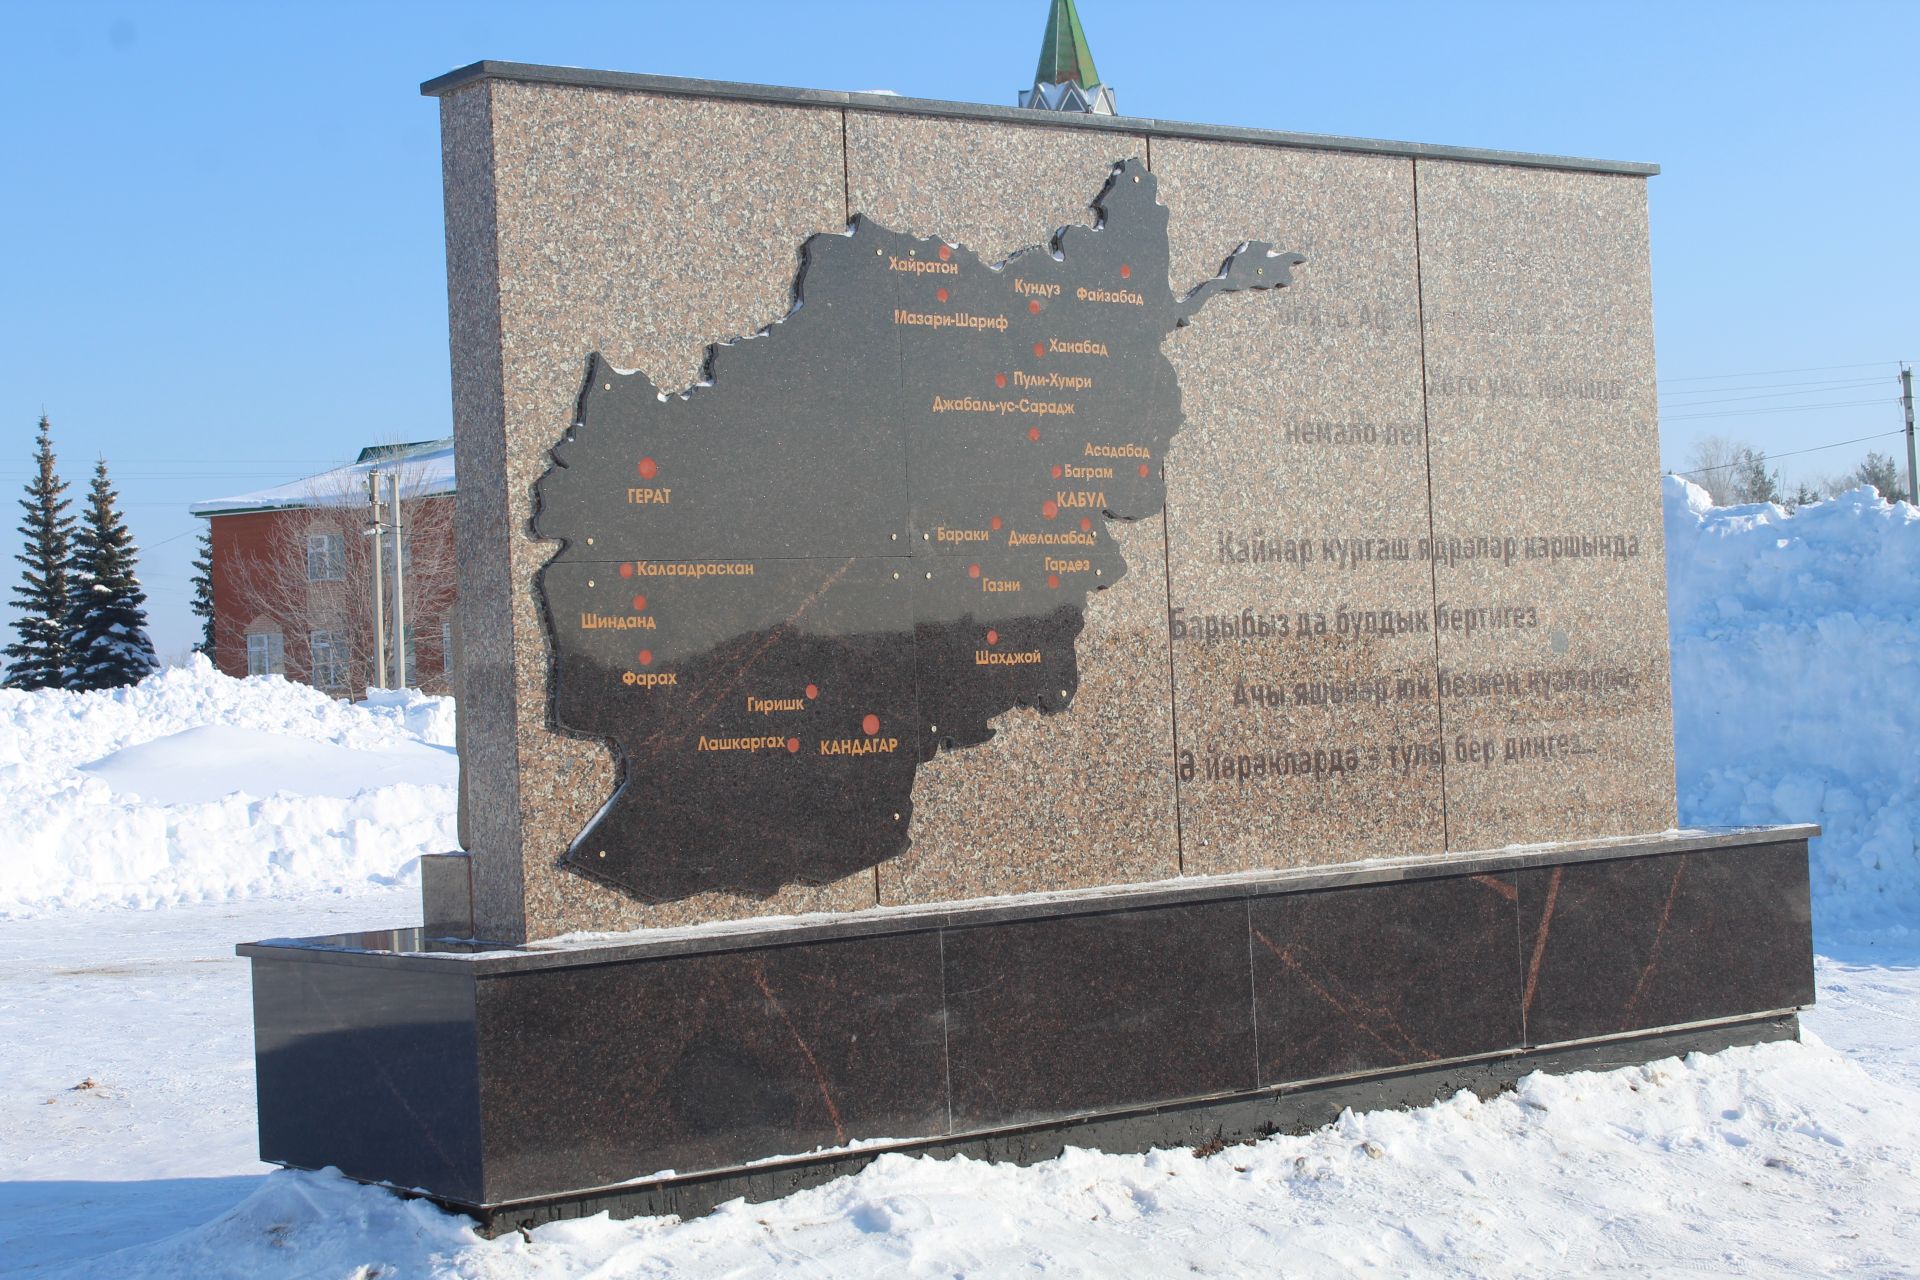 Кукмара Җиңү паркында сугышчы-интернационалистларга мемориал ачылды